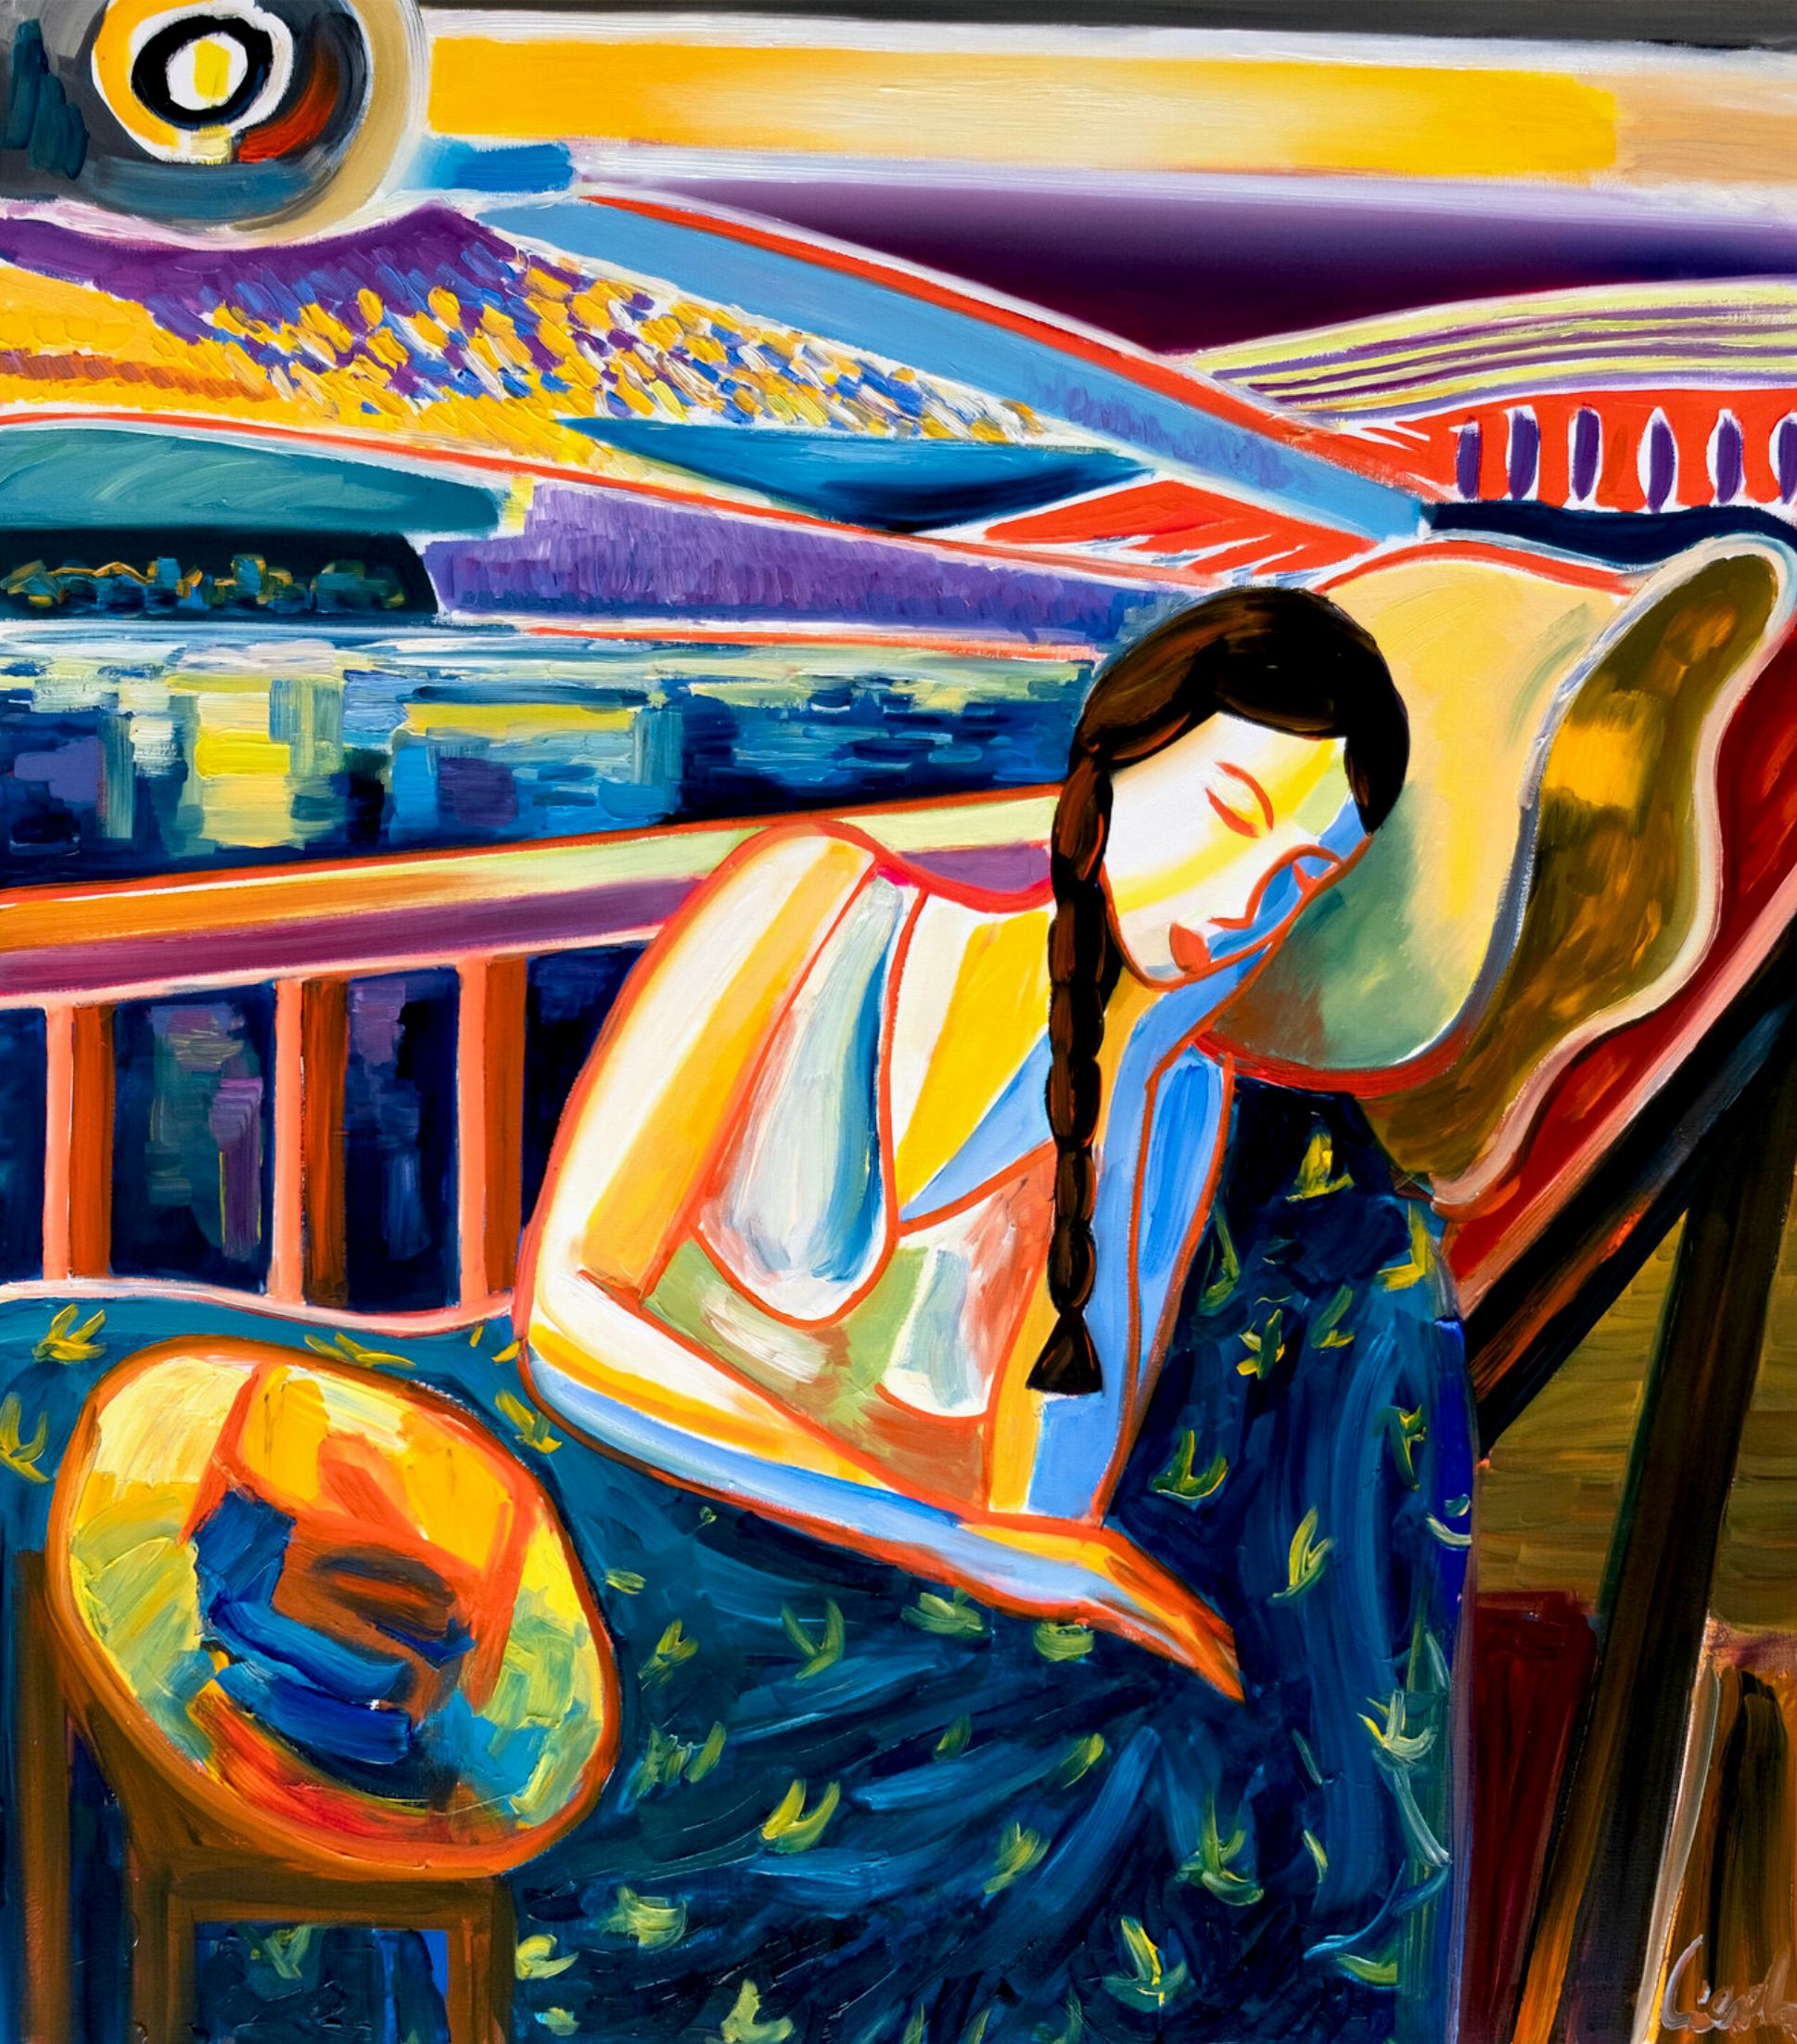 MECESLA Maciej Cieśla, "Jeune fille endormie et paysage italien", peinture abstraite d'une jeune fille endormie avec des combinaisons de couleurs agressives devant un paysage italien